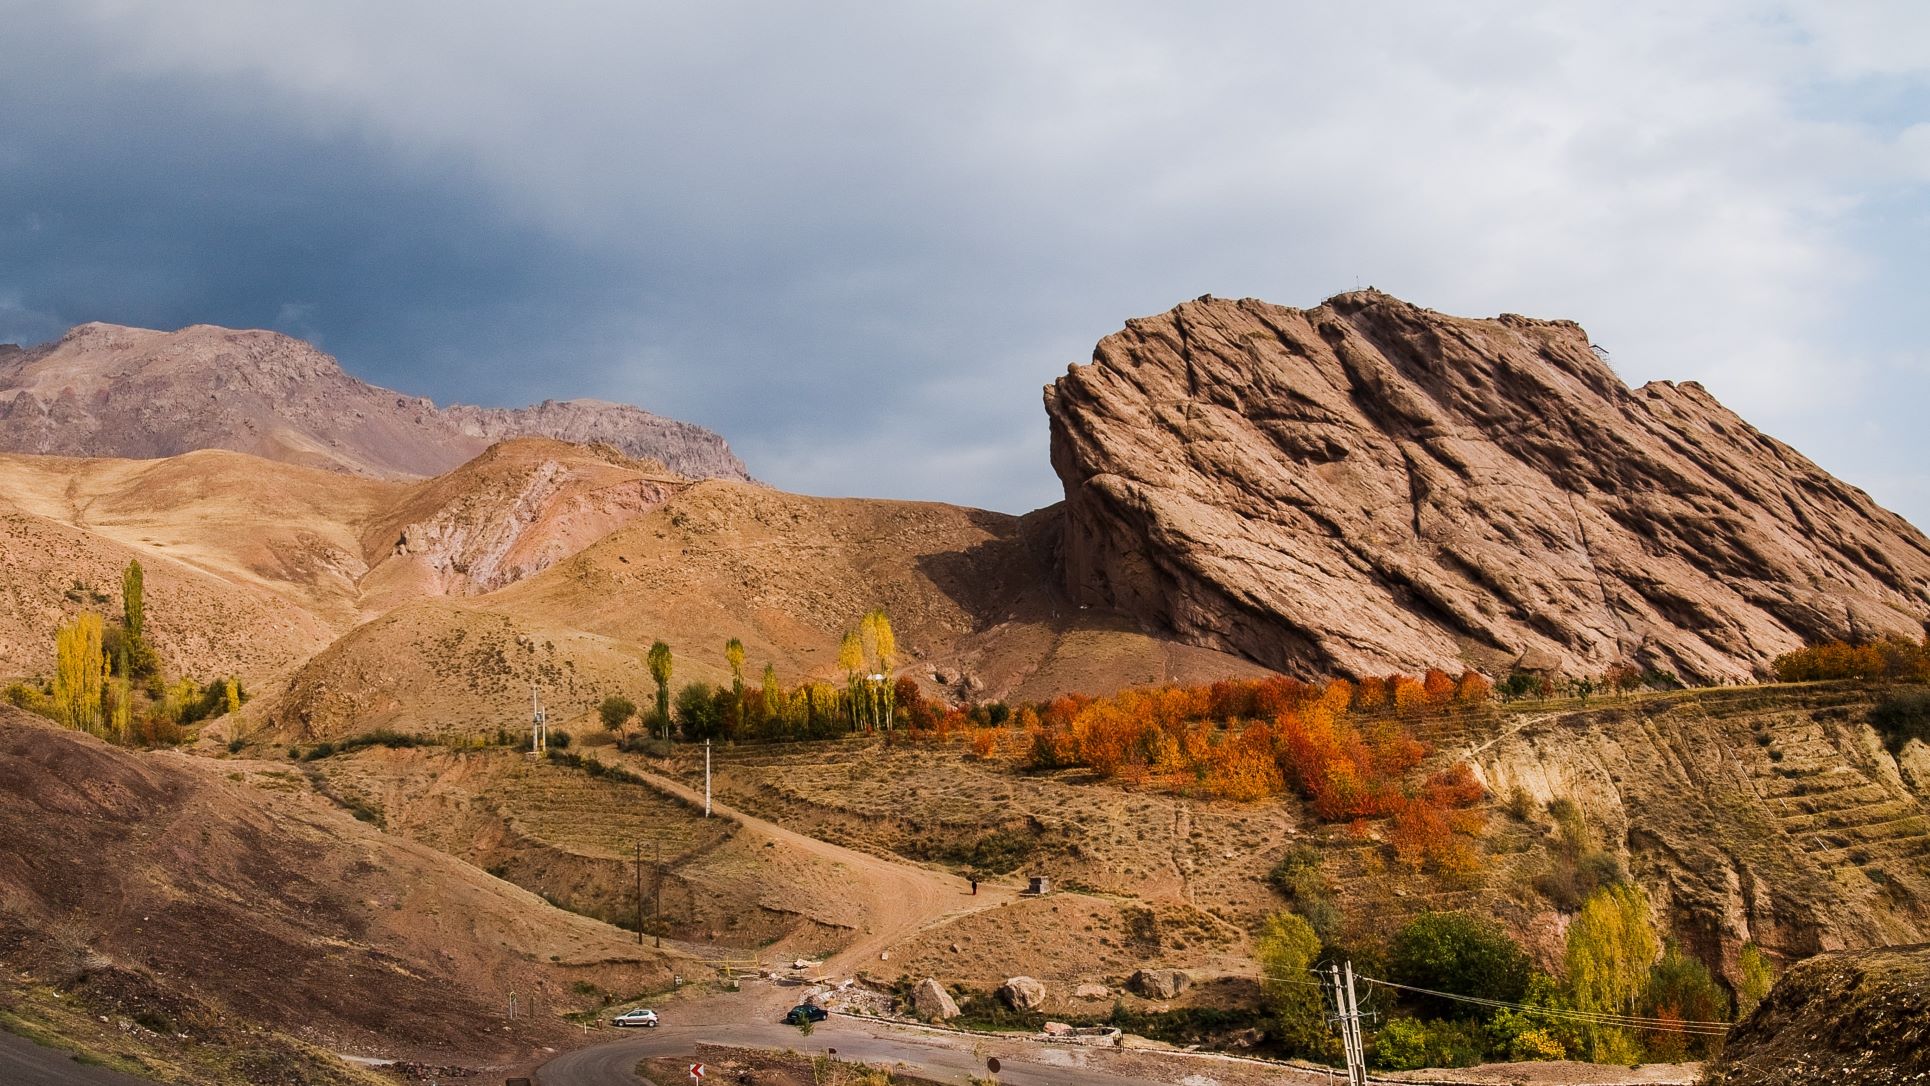 Les vestiges d’Alamut sont visibles sur cette photo prise dans la chaîne de montagnes de l’Elbourz, en Iran (Wikimedia/Julia Maudlin)